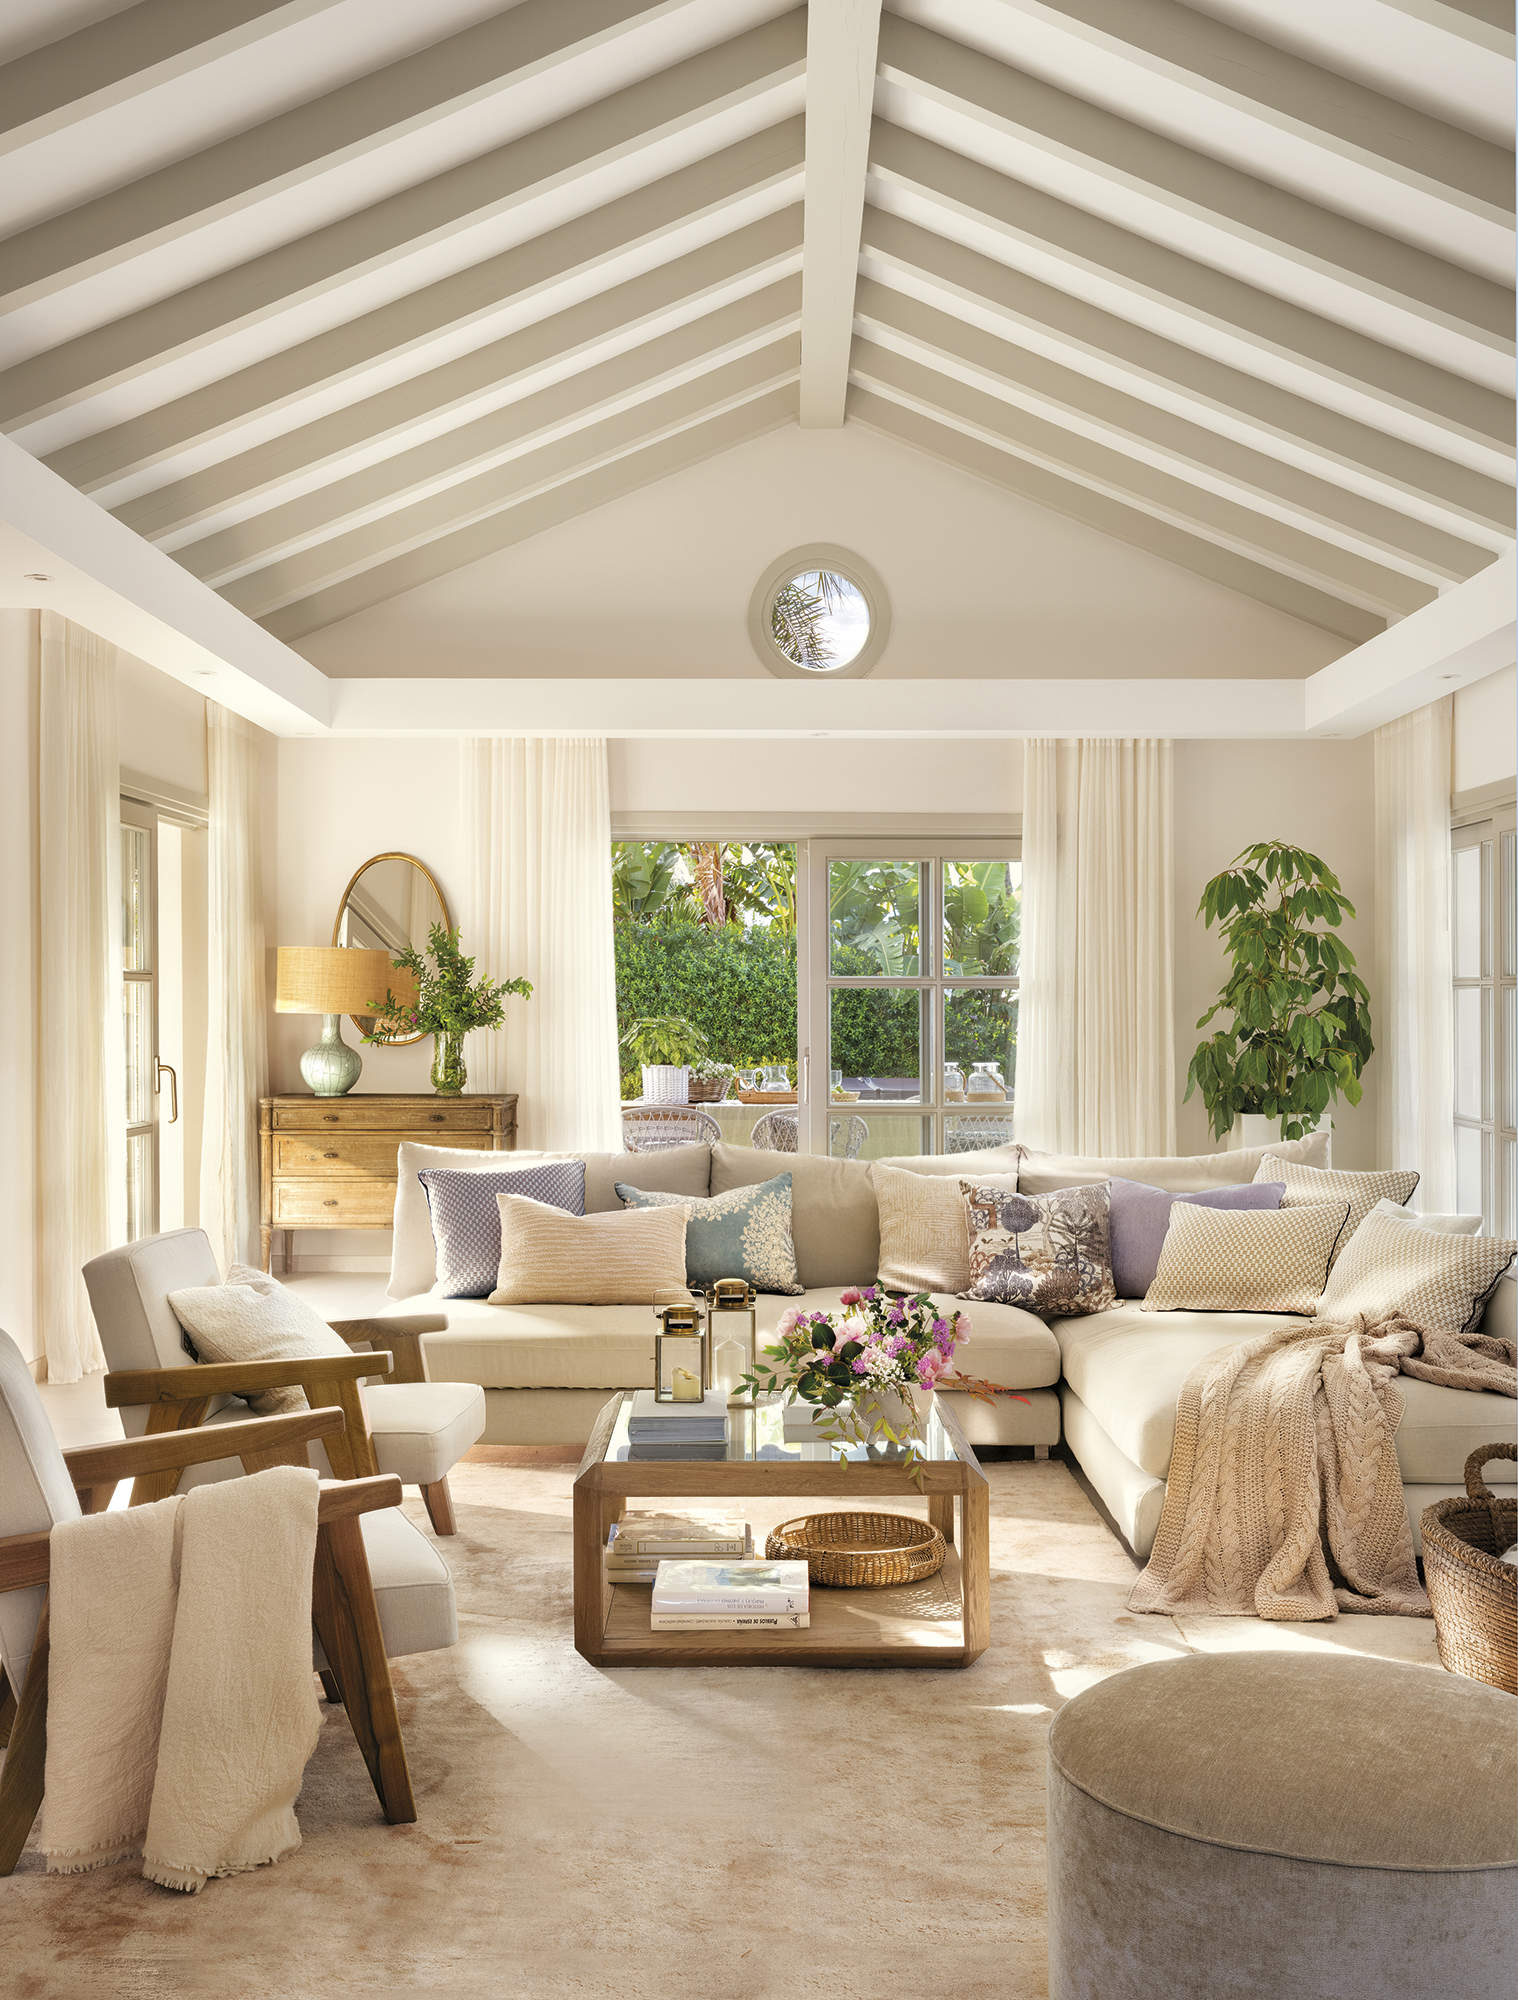 salón blanco con techo a dos aguas con vigas de madera beige, sofá esquinero, butacas de madera tapizadas, alfombra beige, puf